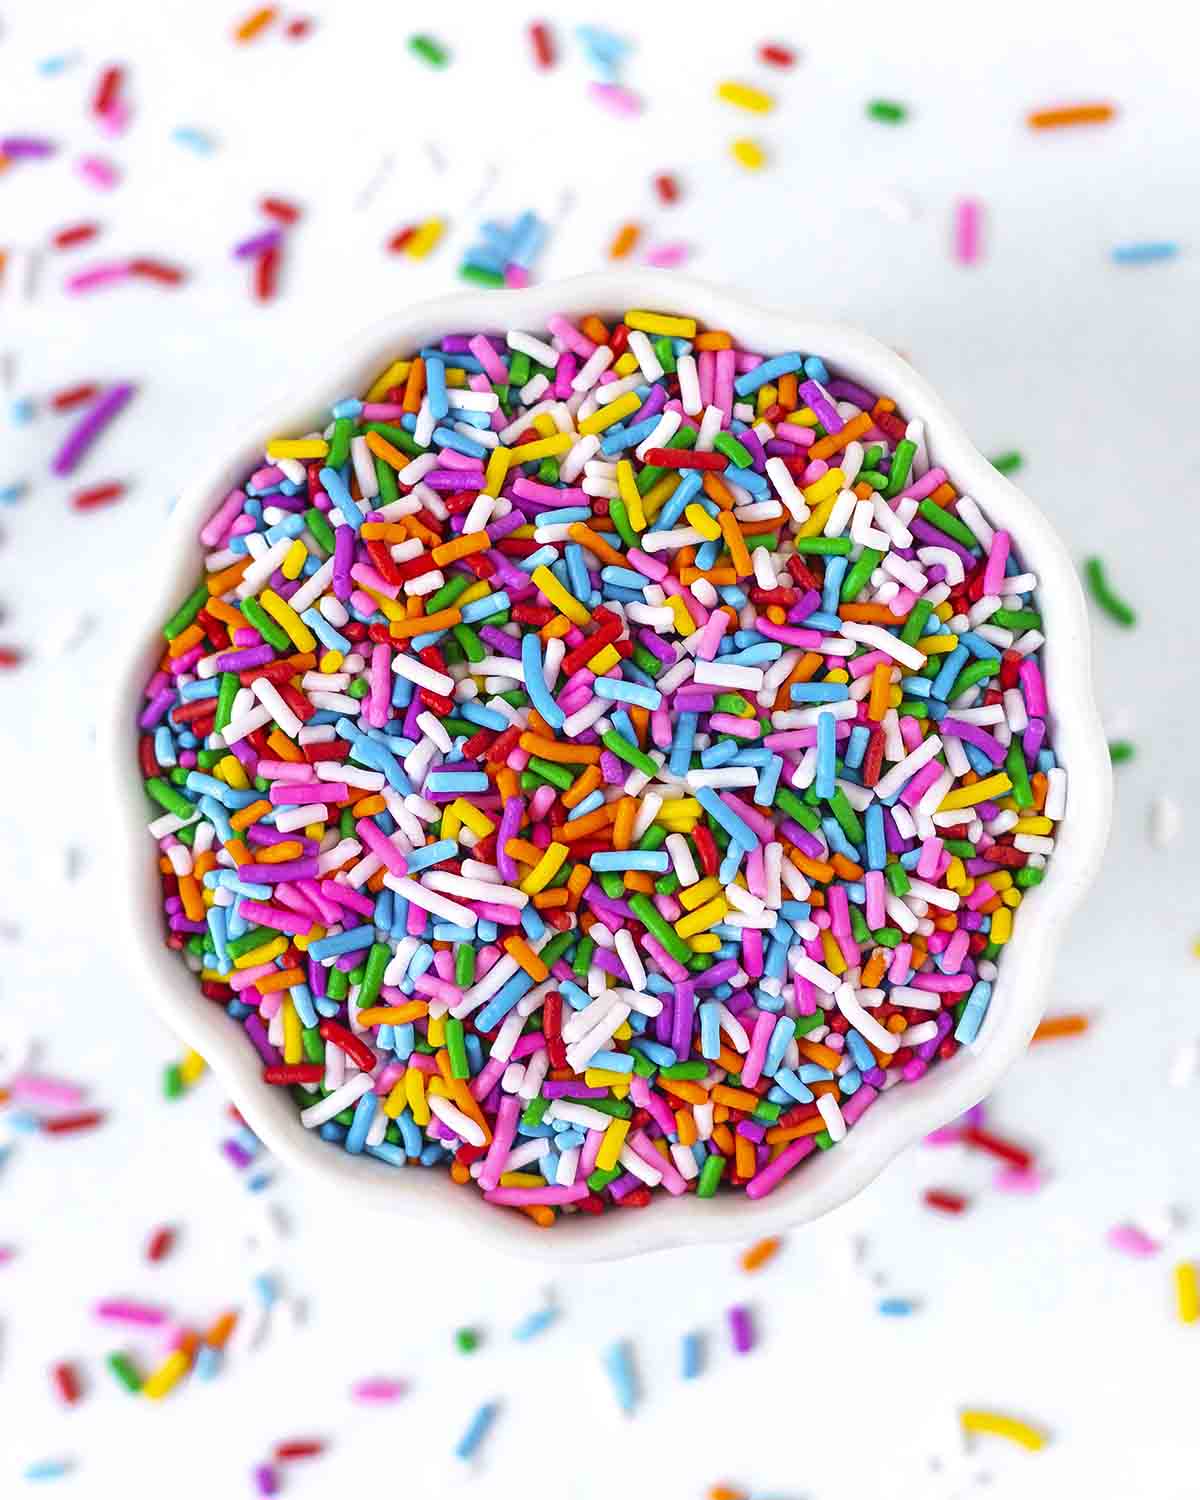 Cake sprinkles in a white bowl.